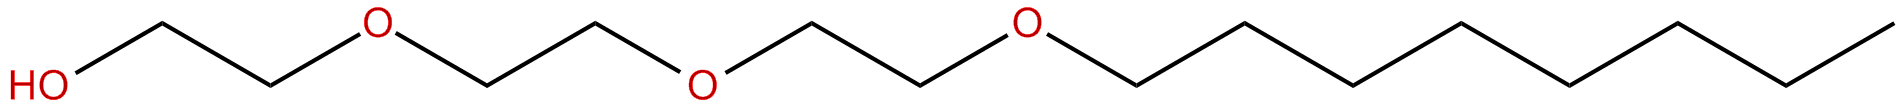 Image of 2-[2-[2-(octyloxy)ethoxy]ethoxy]ethanol